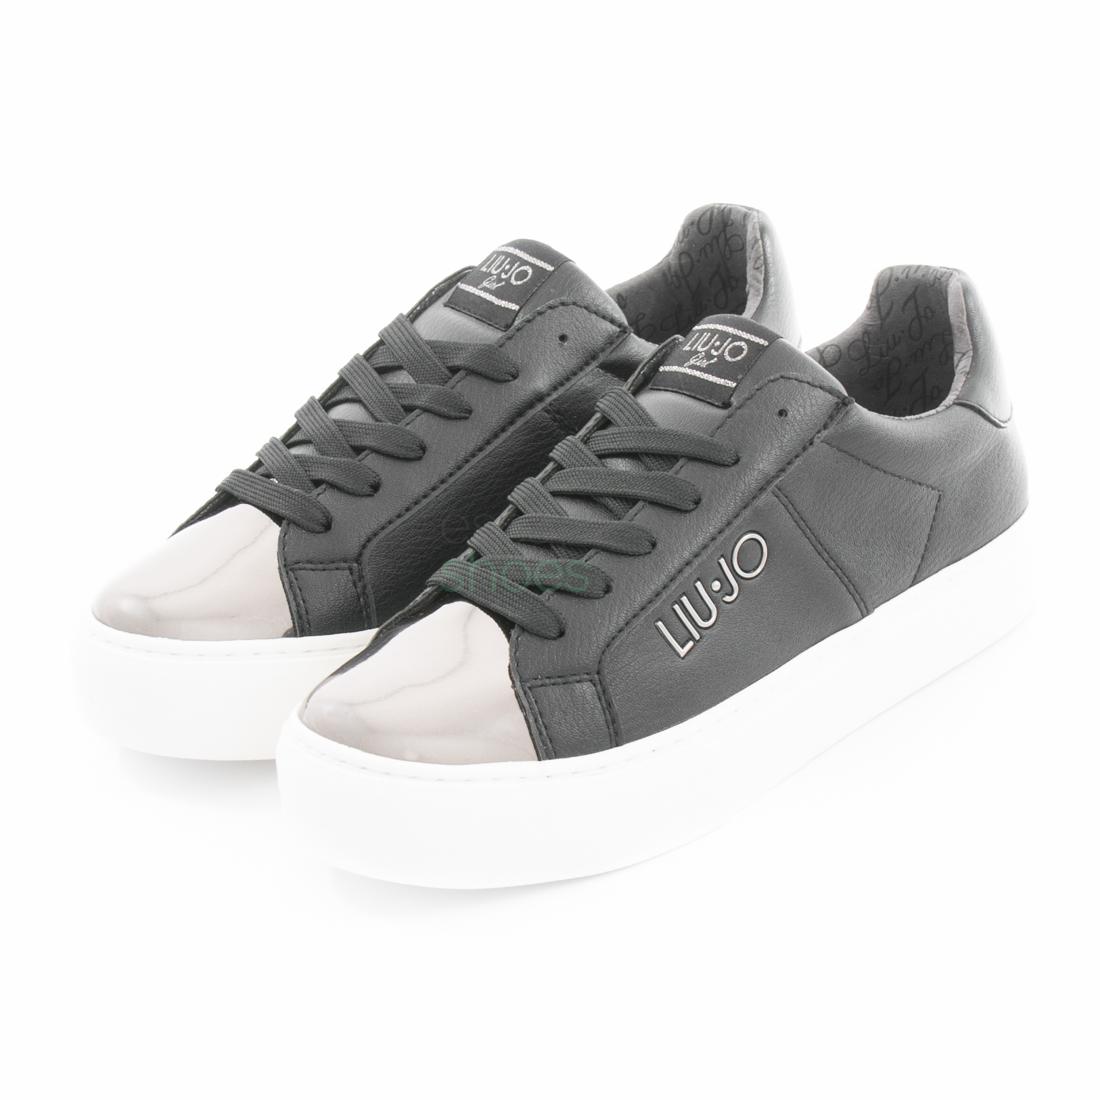 Maestro Islas Faroe Lleno Sneakers LIU JO Nero UM23266